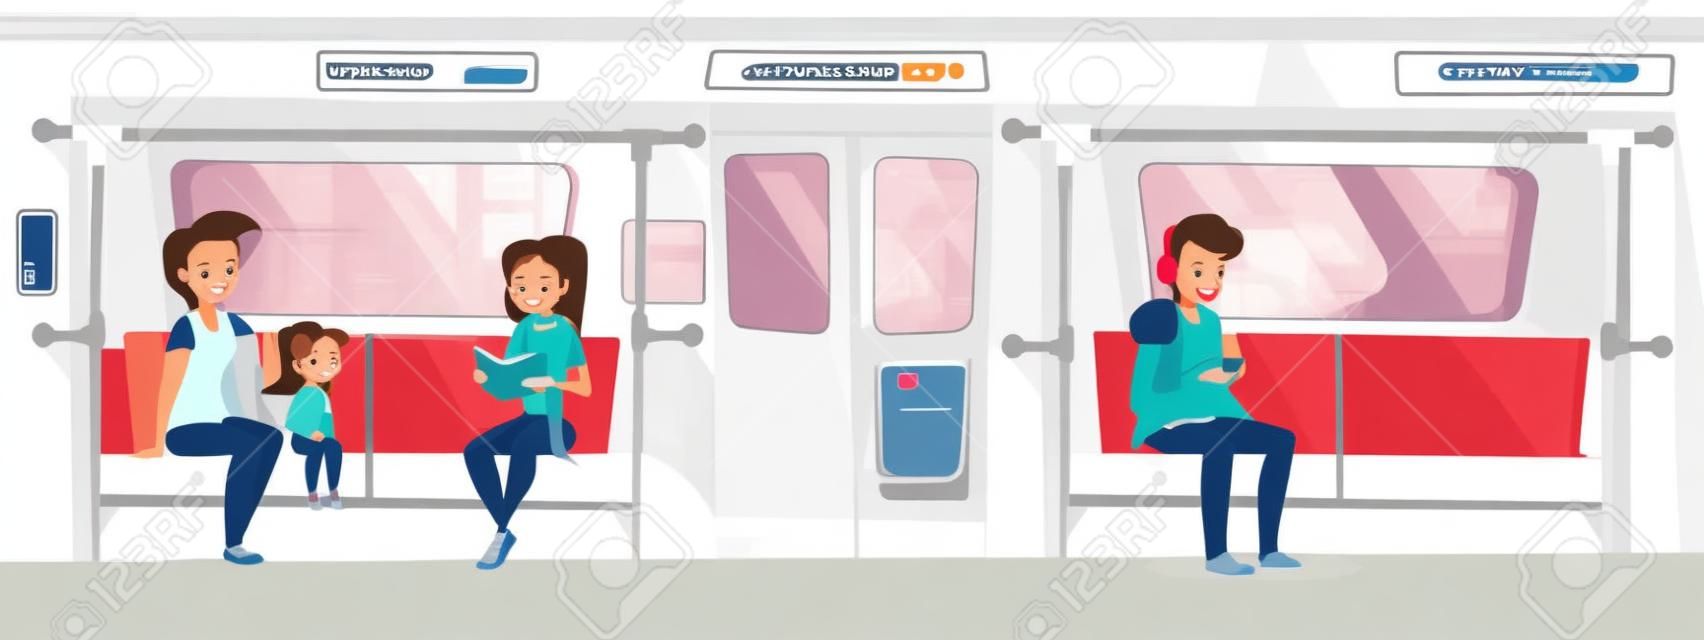 Personas en la ilustración de vector de tren subterráneo. Mujer joven con niña en metro libro de lectura y sonrisa, muchacho adolescente sentado en el asiento y escuchar música en auriculares desde el teléfono inteligente